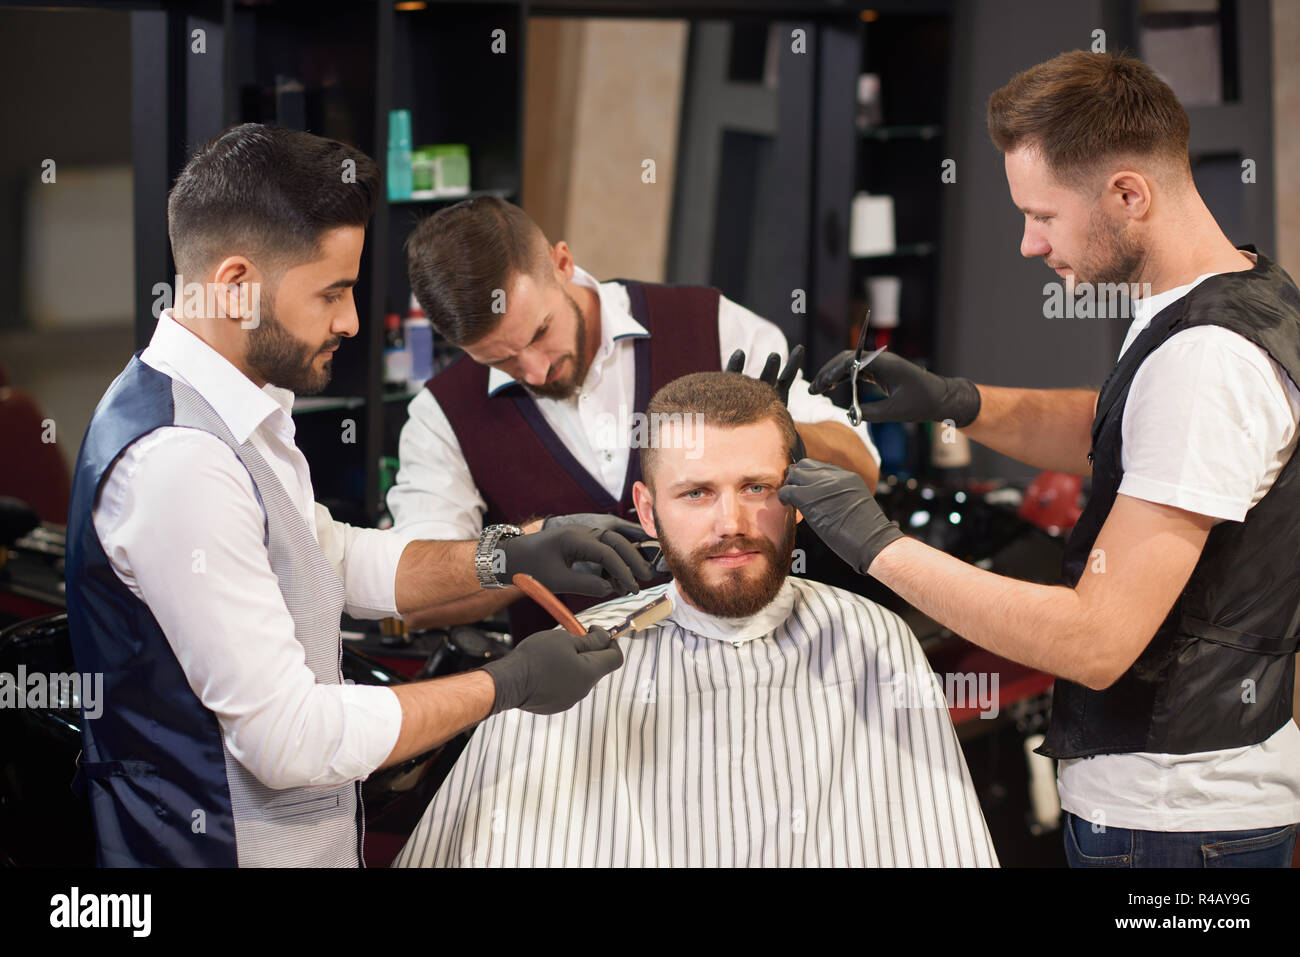 Les jeunes clients masculins sitting in chair et looking at camera tandis que les professionnels de la coiffure et de l'entretien permanent autour de lui à vintage barber shop. Coiffeurs qualifiés coiffer les cheveux et la barbe. Banque D'Images